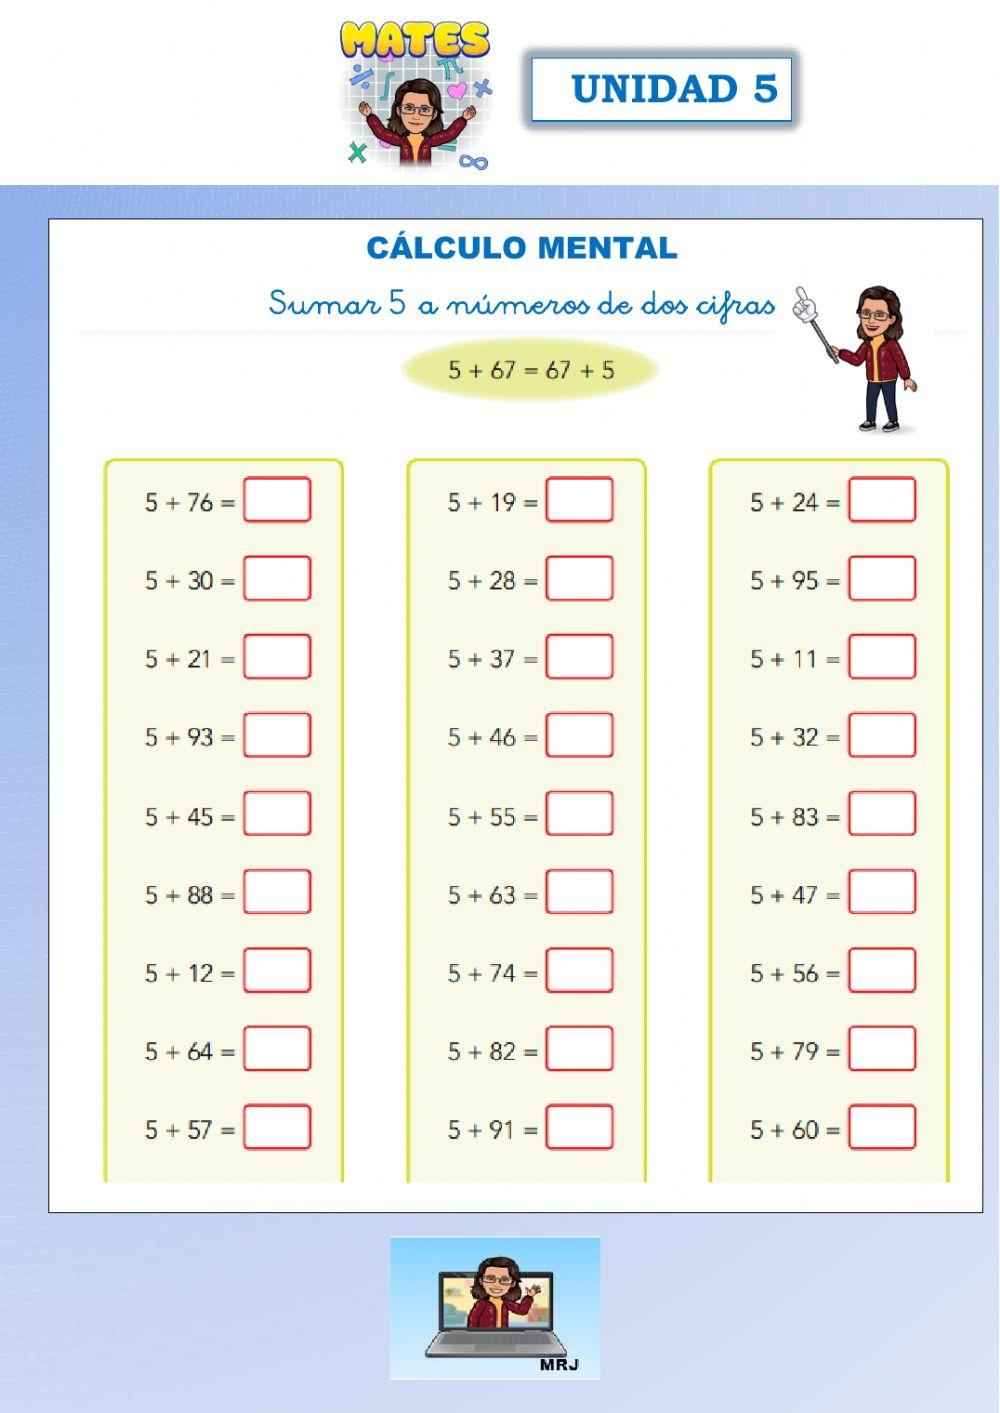 Cálculo mental: sumar 5 a números de dos cifras